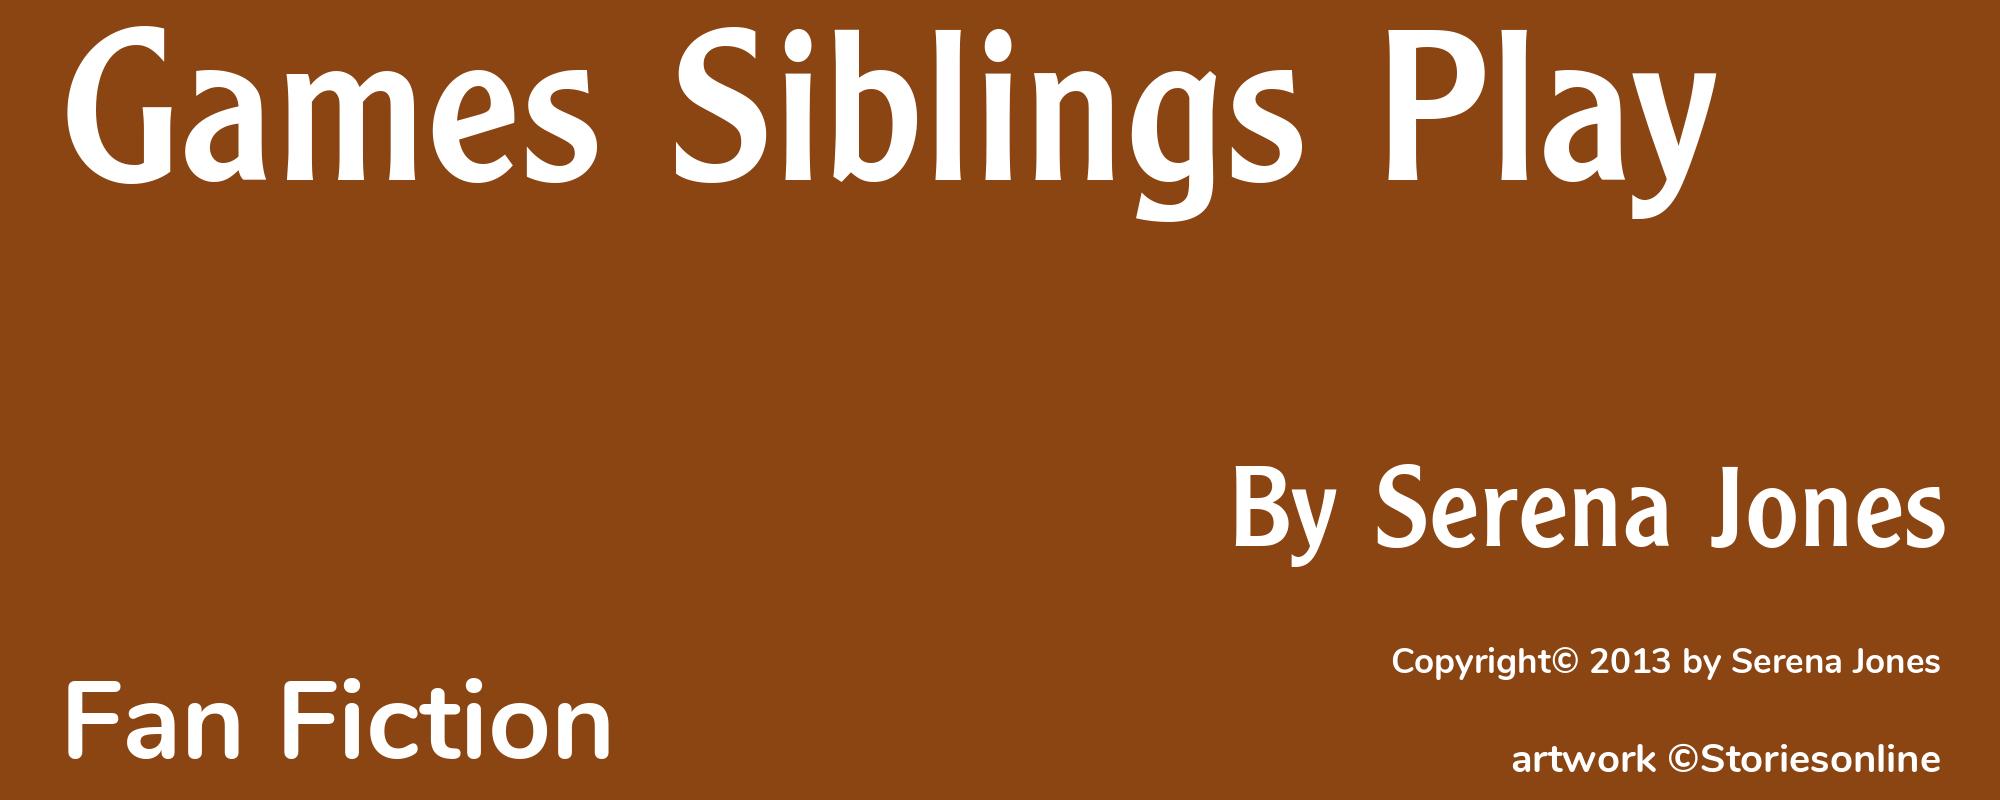 Games Siblings Play - Cover